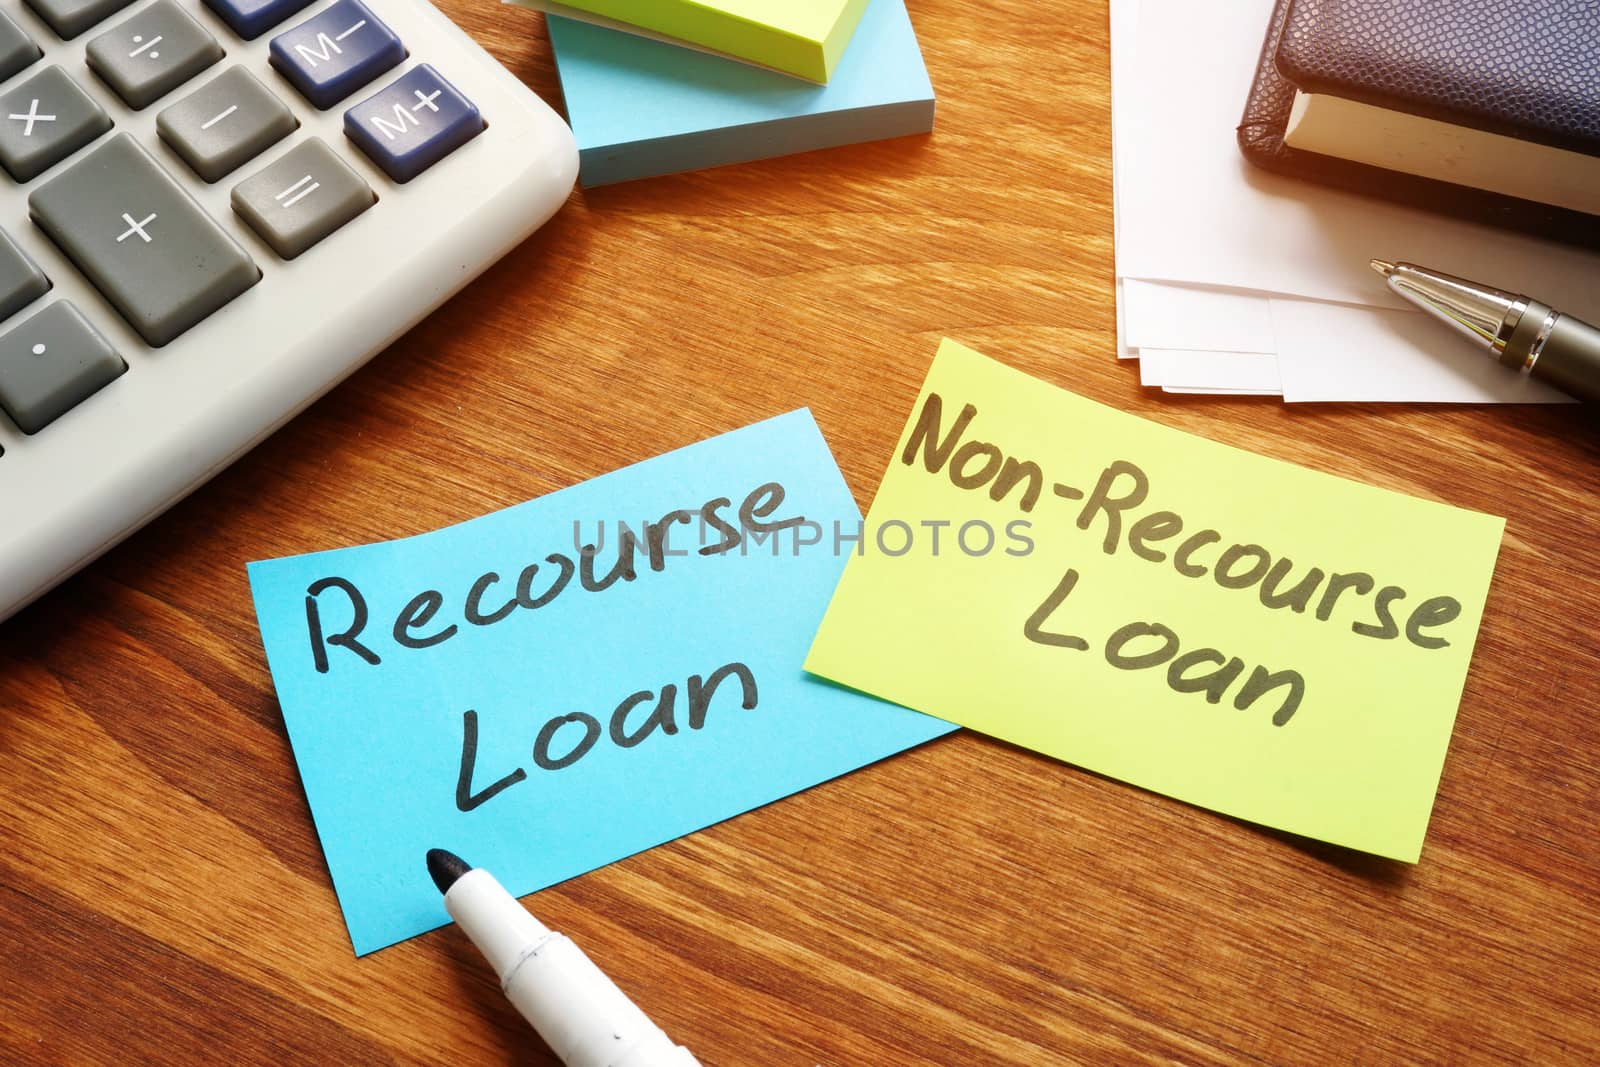 Recourse Loan or Non-Recourse Loan choosing. Color memo sticks with inscriptions.